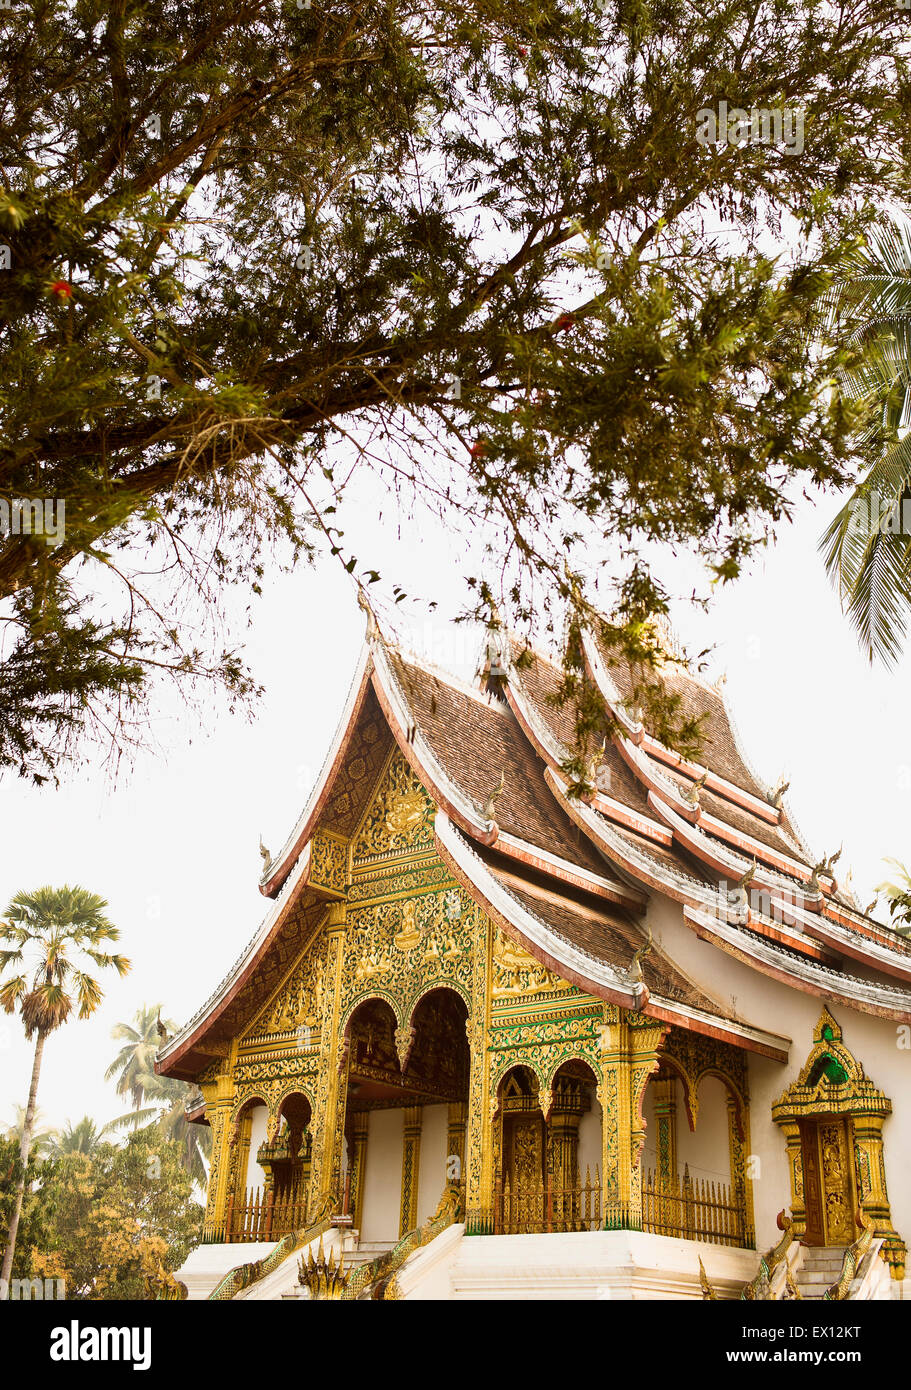 Esterno del Wat Prabang che contiene il Santo Buddha, situato all'interno dei cancelli della Luang Prabang Museo Nazionale. Foto Stock